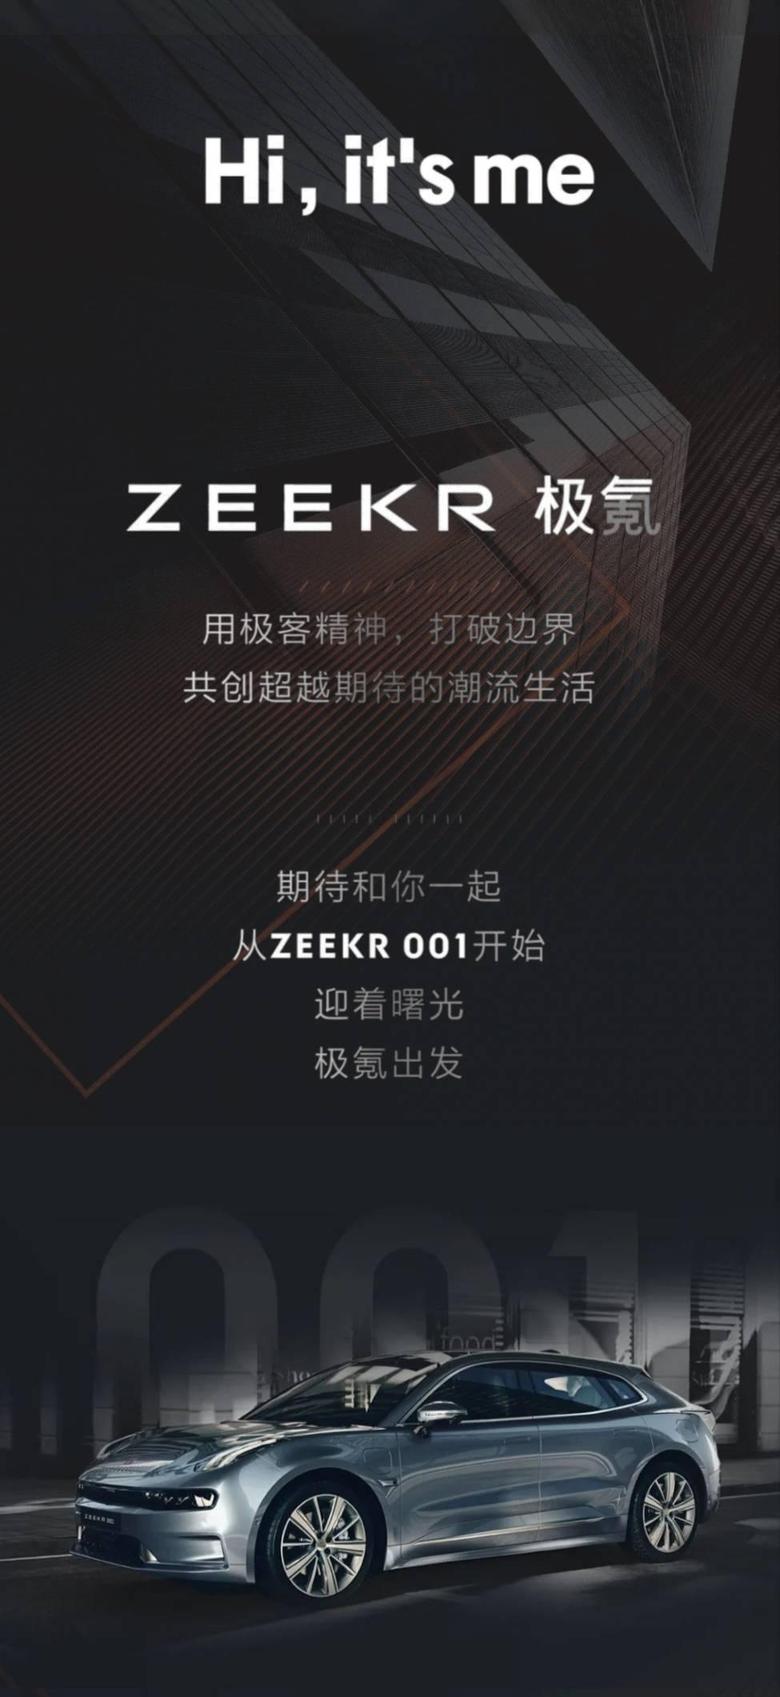 领克ZERO今日正式更新为极氪001ZEEKR001，领克ZERO小程序更新为ZEEKR，里面的内容虽然还是LYNKCOZERO，不过迟早也会换掉吧，顿时失望了不少，到时候看正式品牌发布会吧